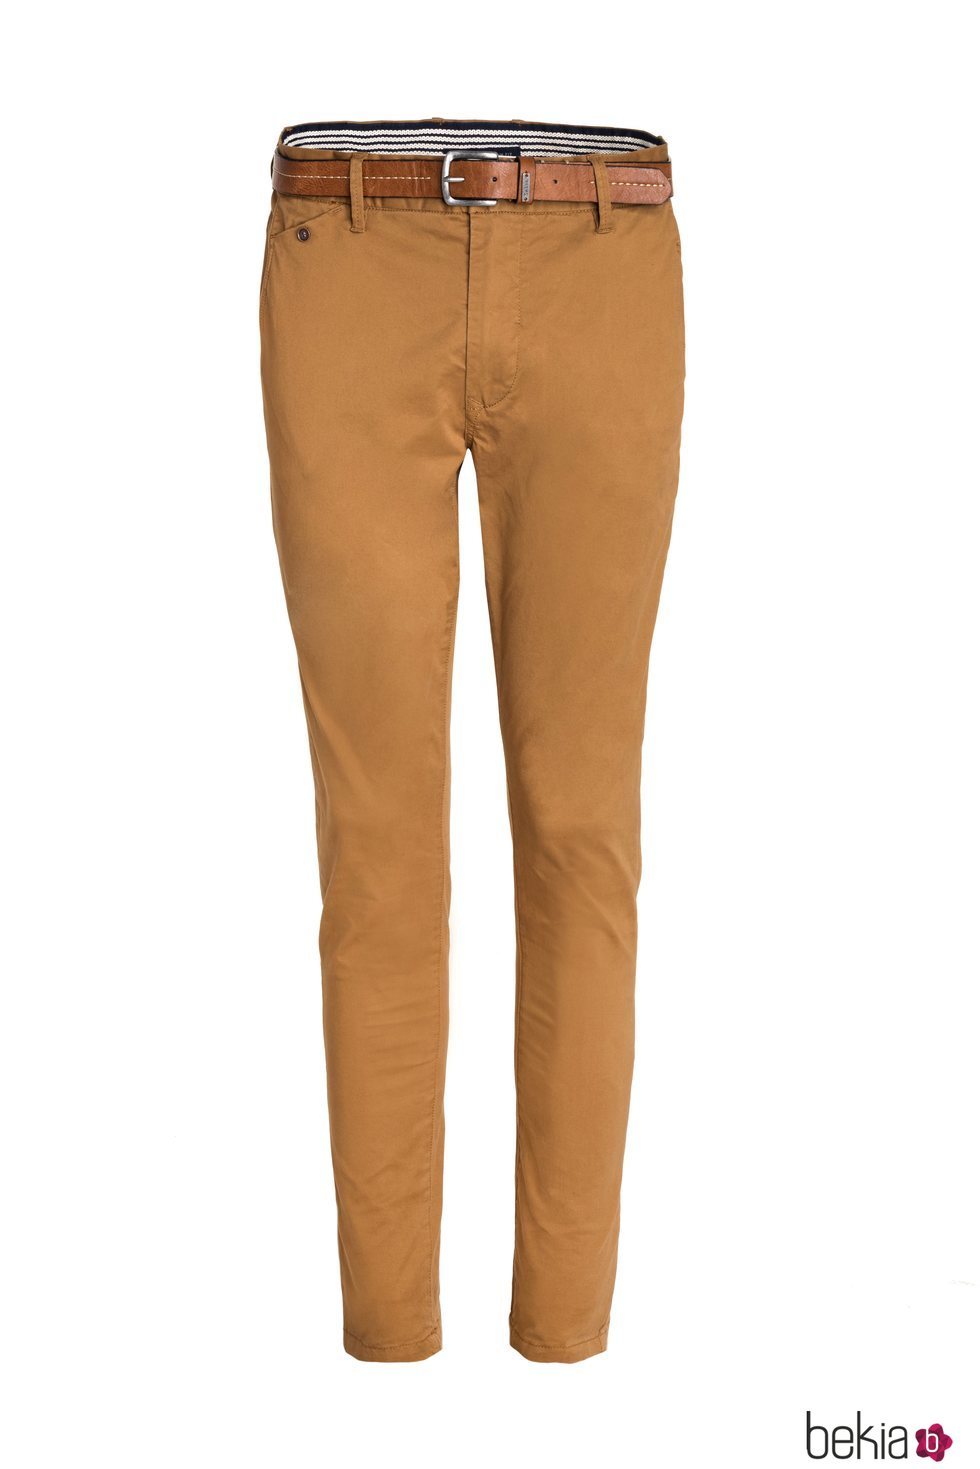 Pantalón marrón combinado con un cinturón de Salsa para la primavera 2018